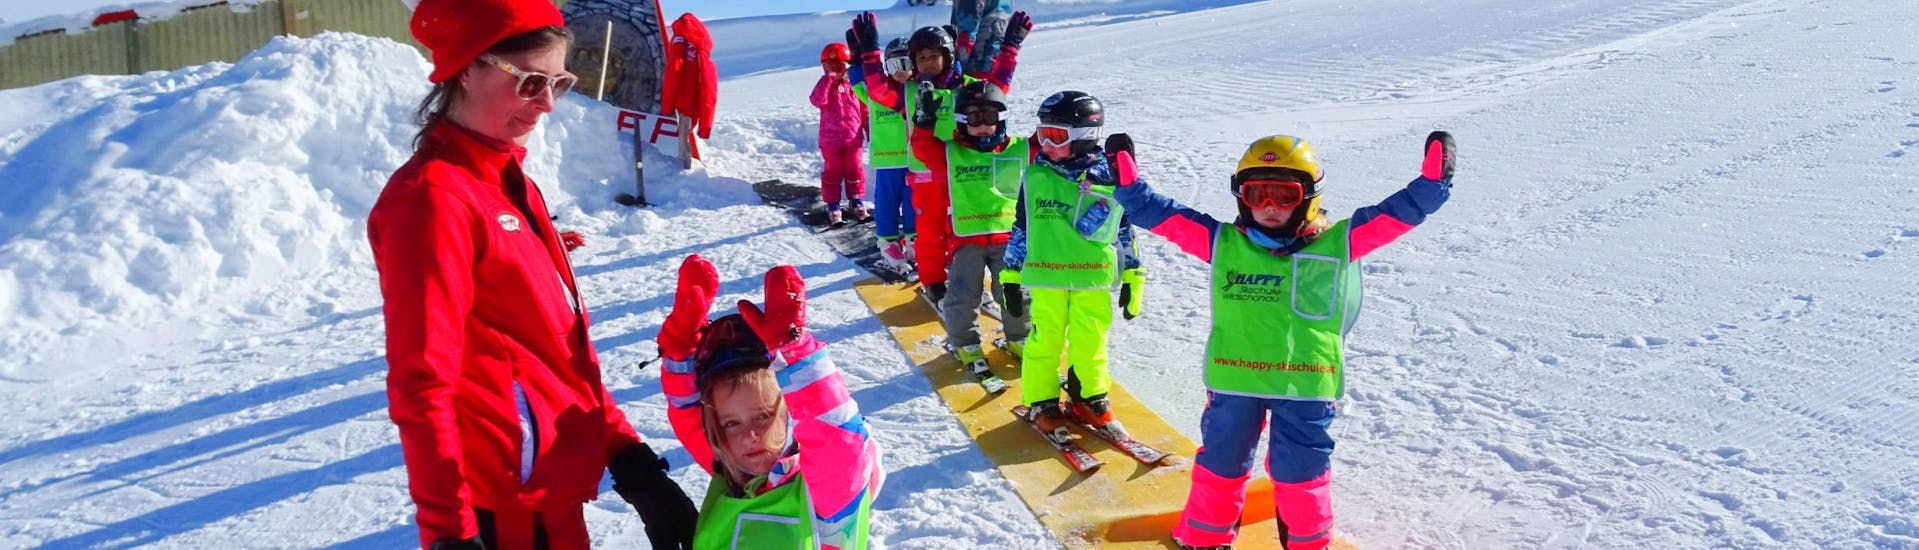 Clases de esquí para niños a partir de 5 años para principiantes.